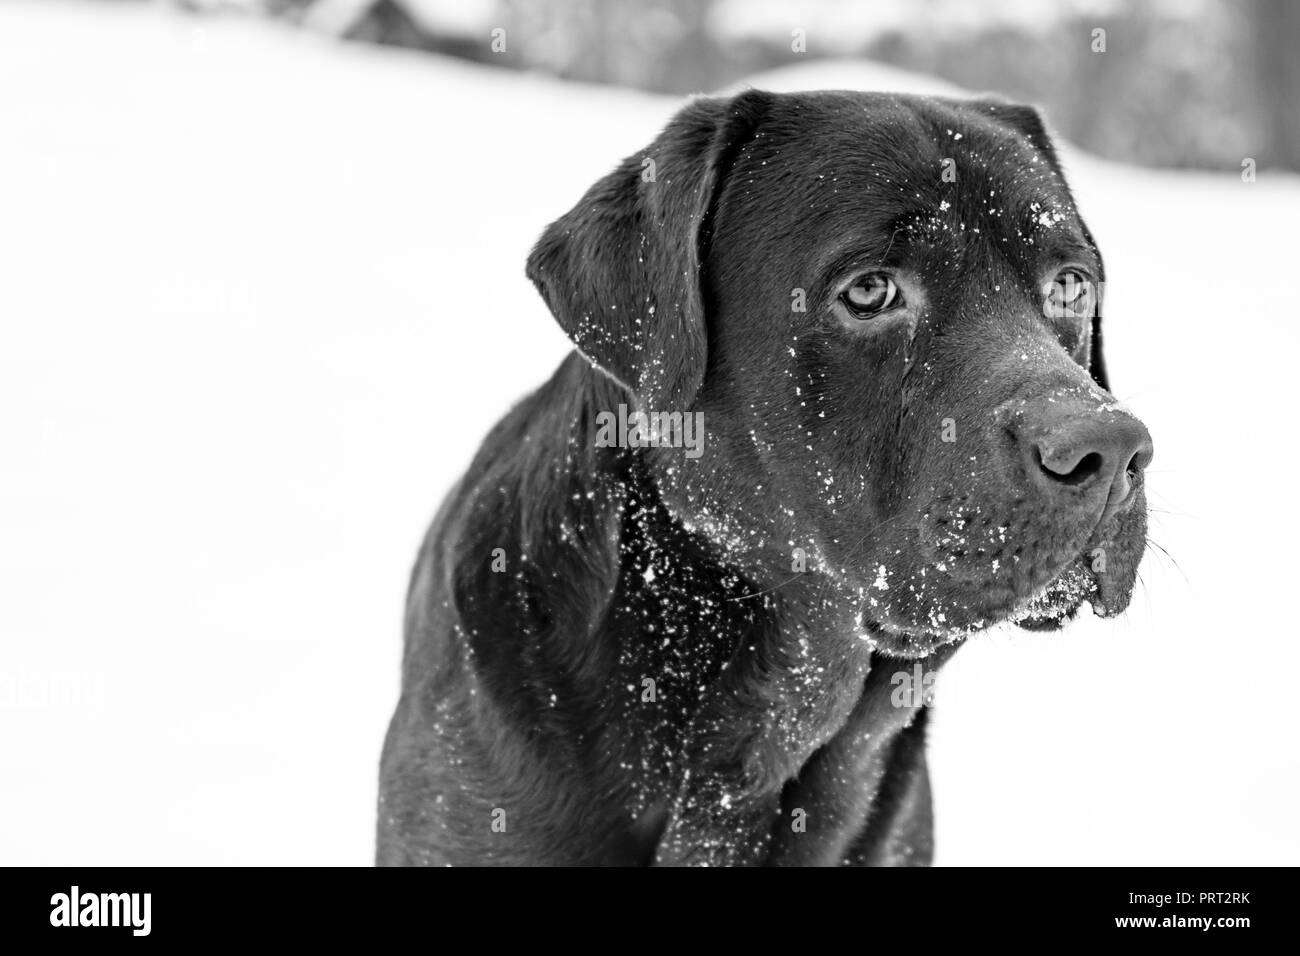 Chocolate Labrador posing Stock Photo